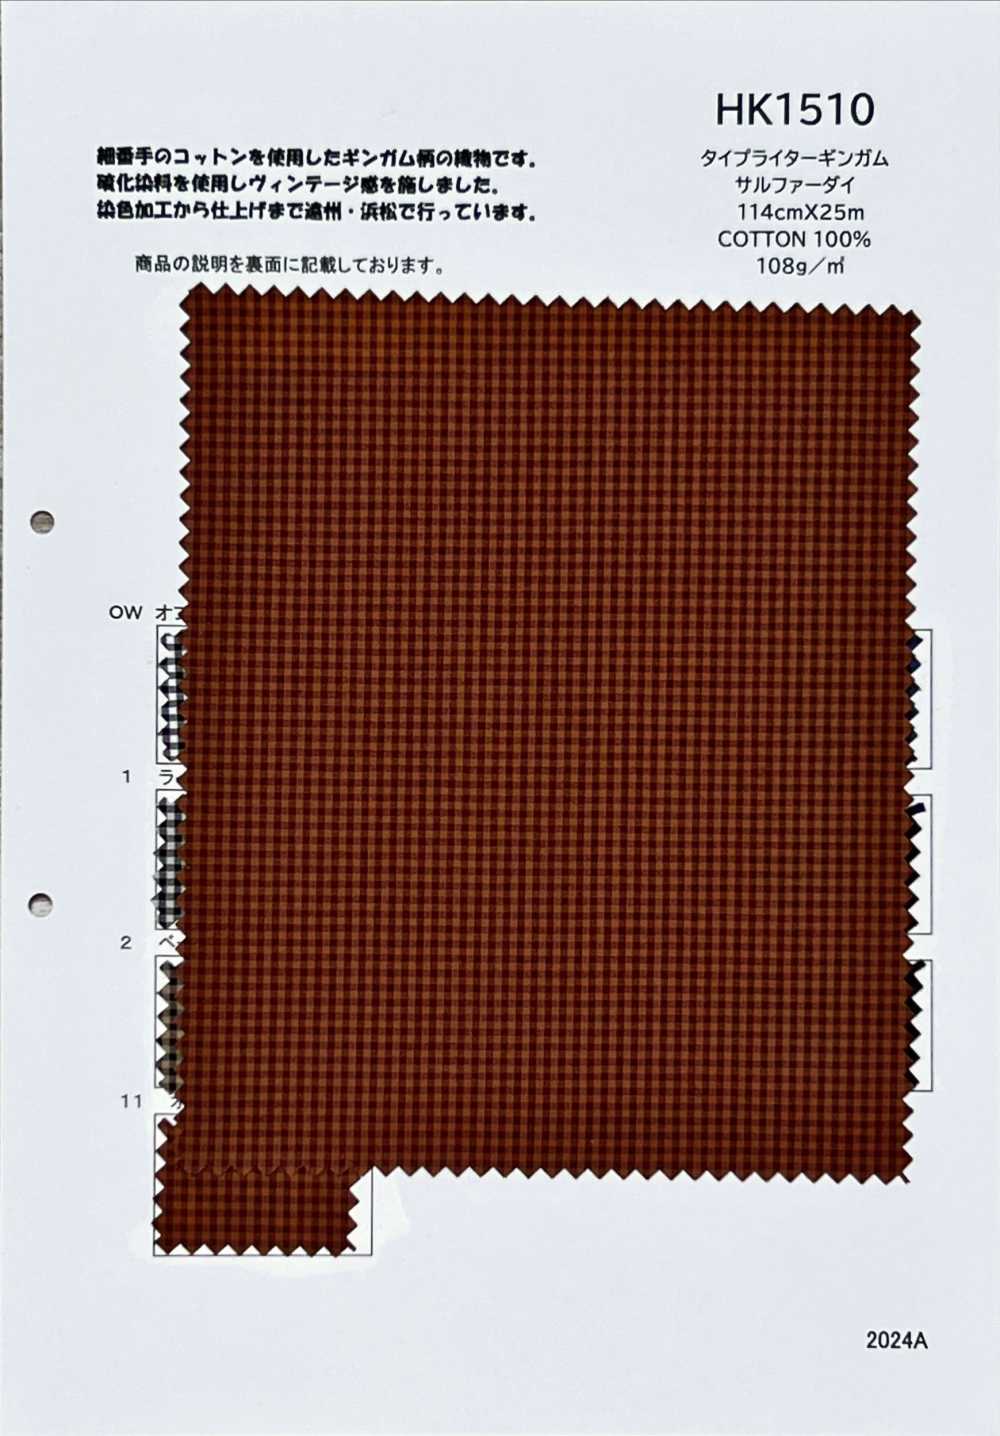 HK1510 Thuốc Nhuộm Vải Cotton Typewritter đánh Chữ KOYAMA